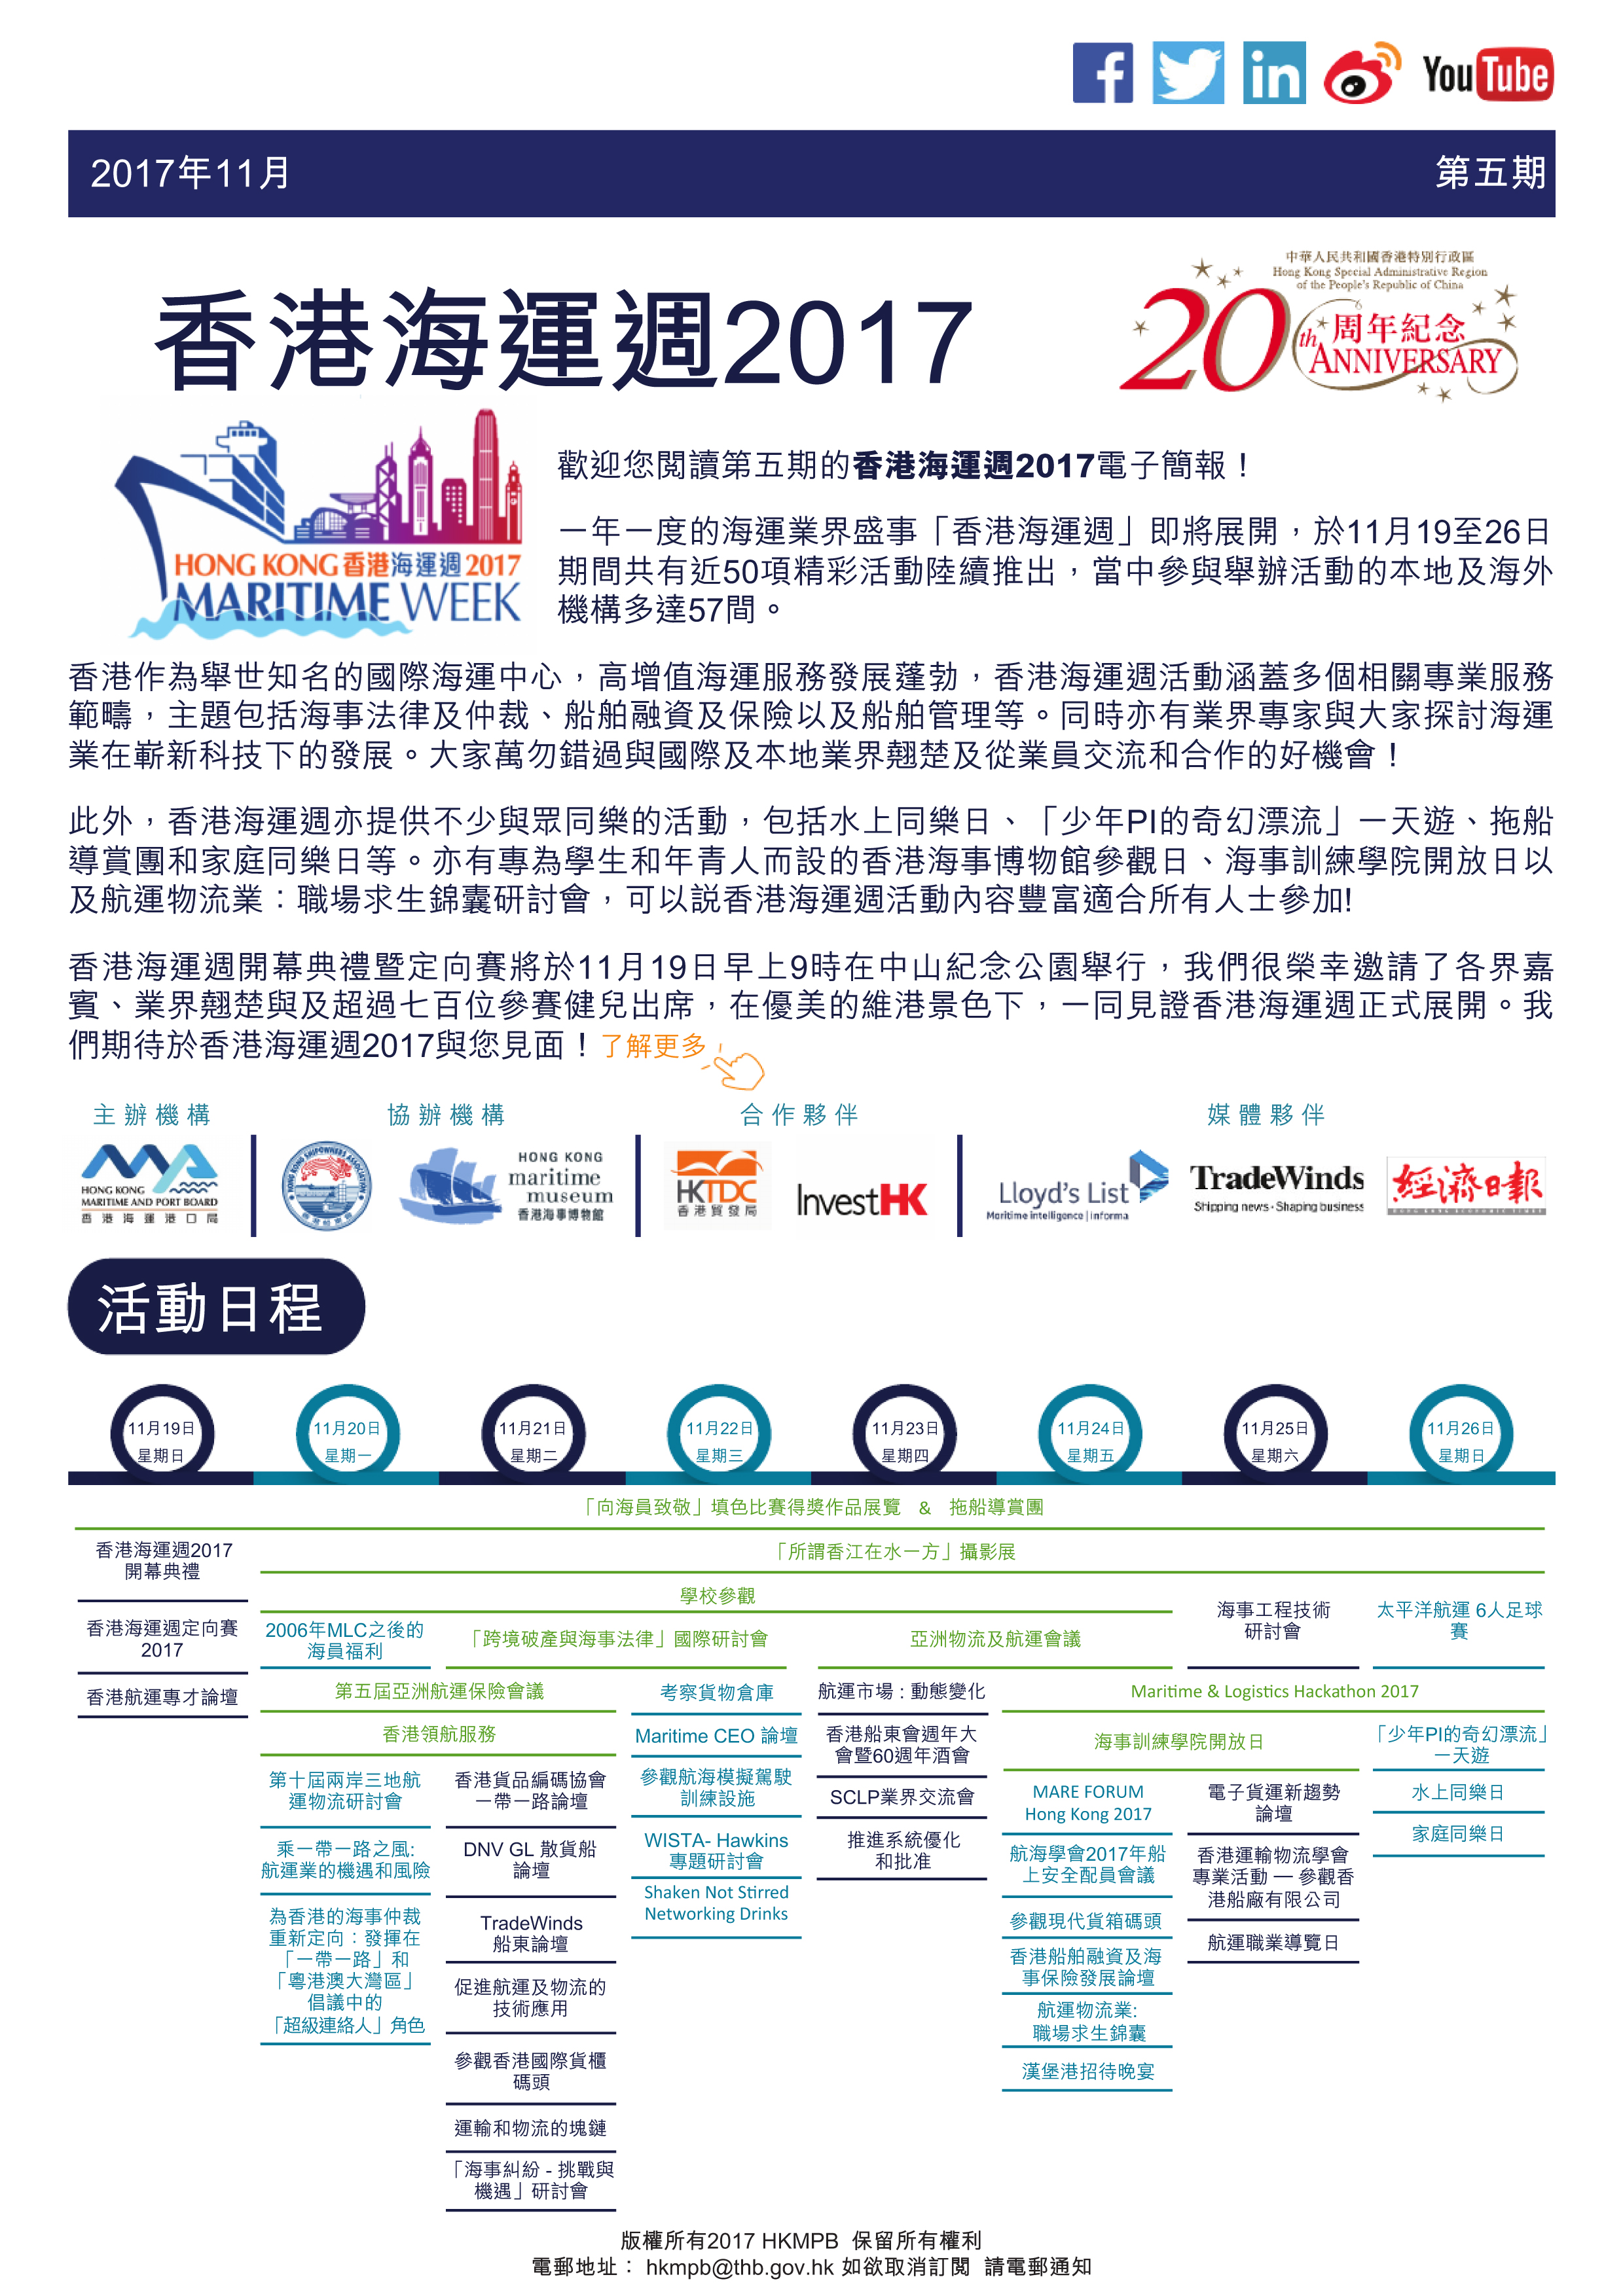 香港海運週2017 電子簡報第5期